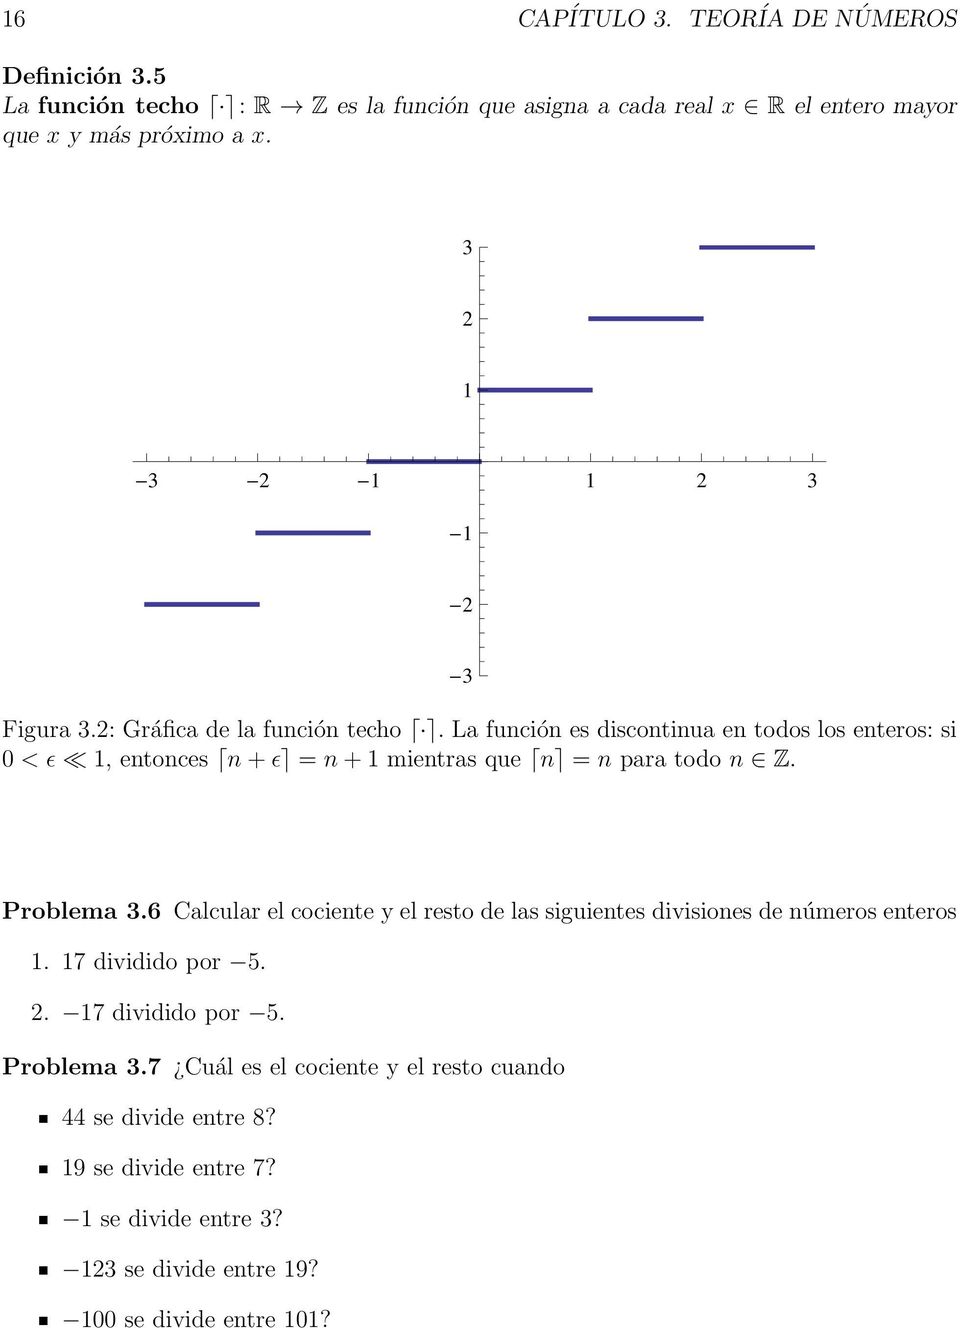 La función es discontinua en todos los enteros: si 0 < ǫ 1, entonces n+ǫ = n+1 mientras que n = n para todo n Z. Problema 3.